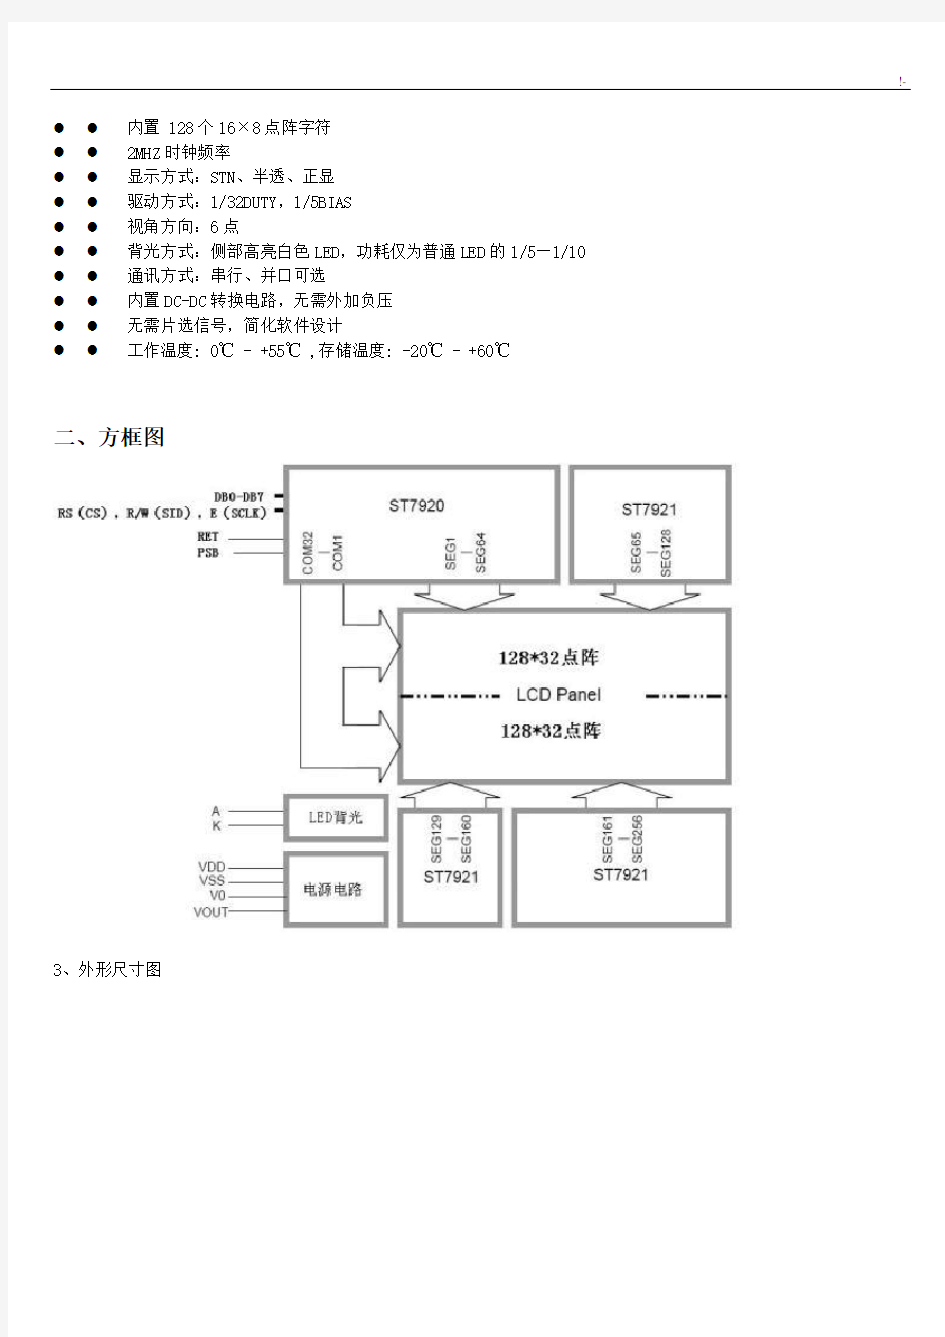 LCD12864中文字库使用说明